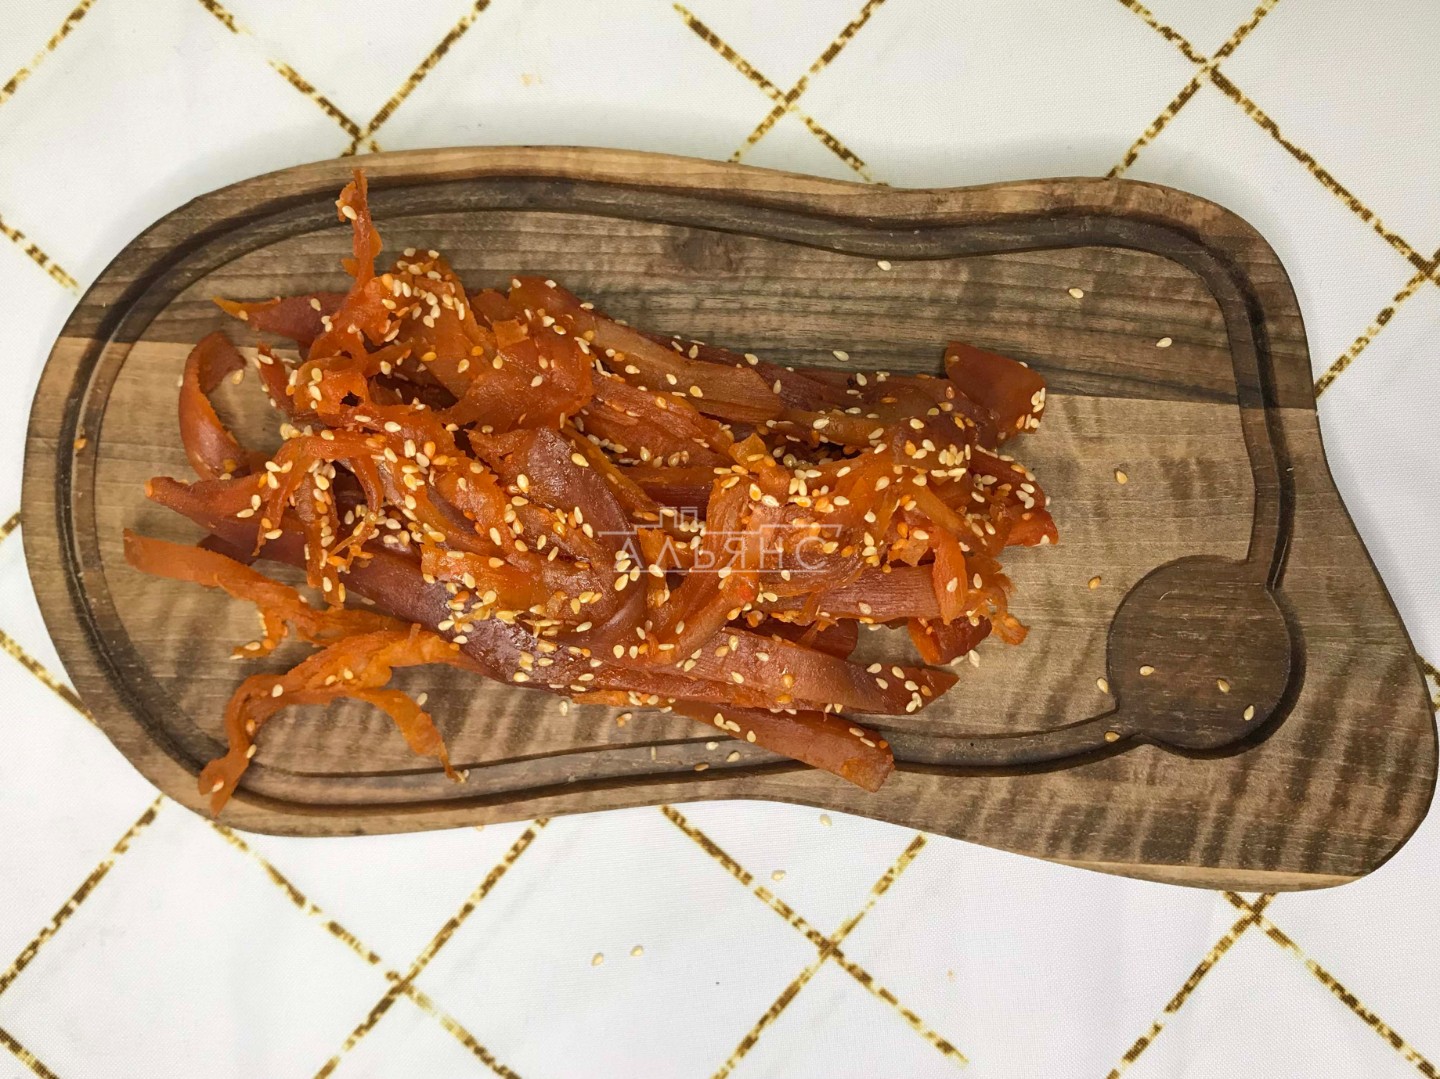 Кальмар со вкусом краба по-шанхайски в Батайске